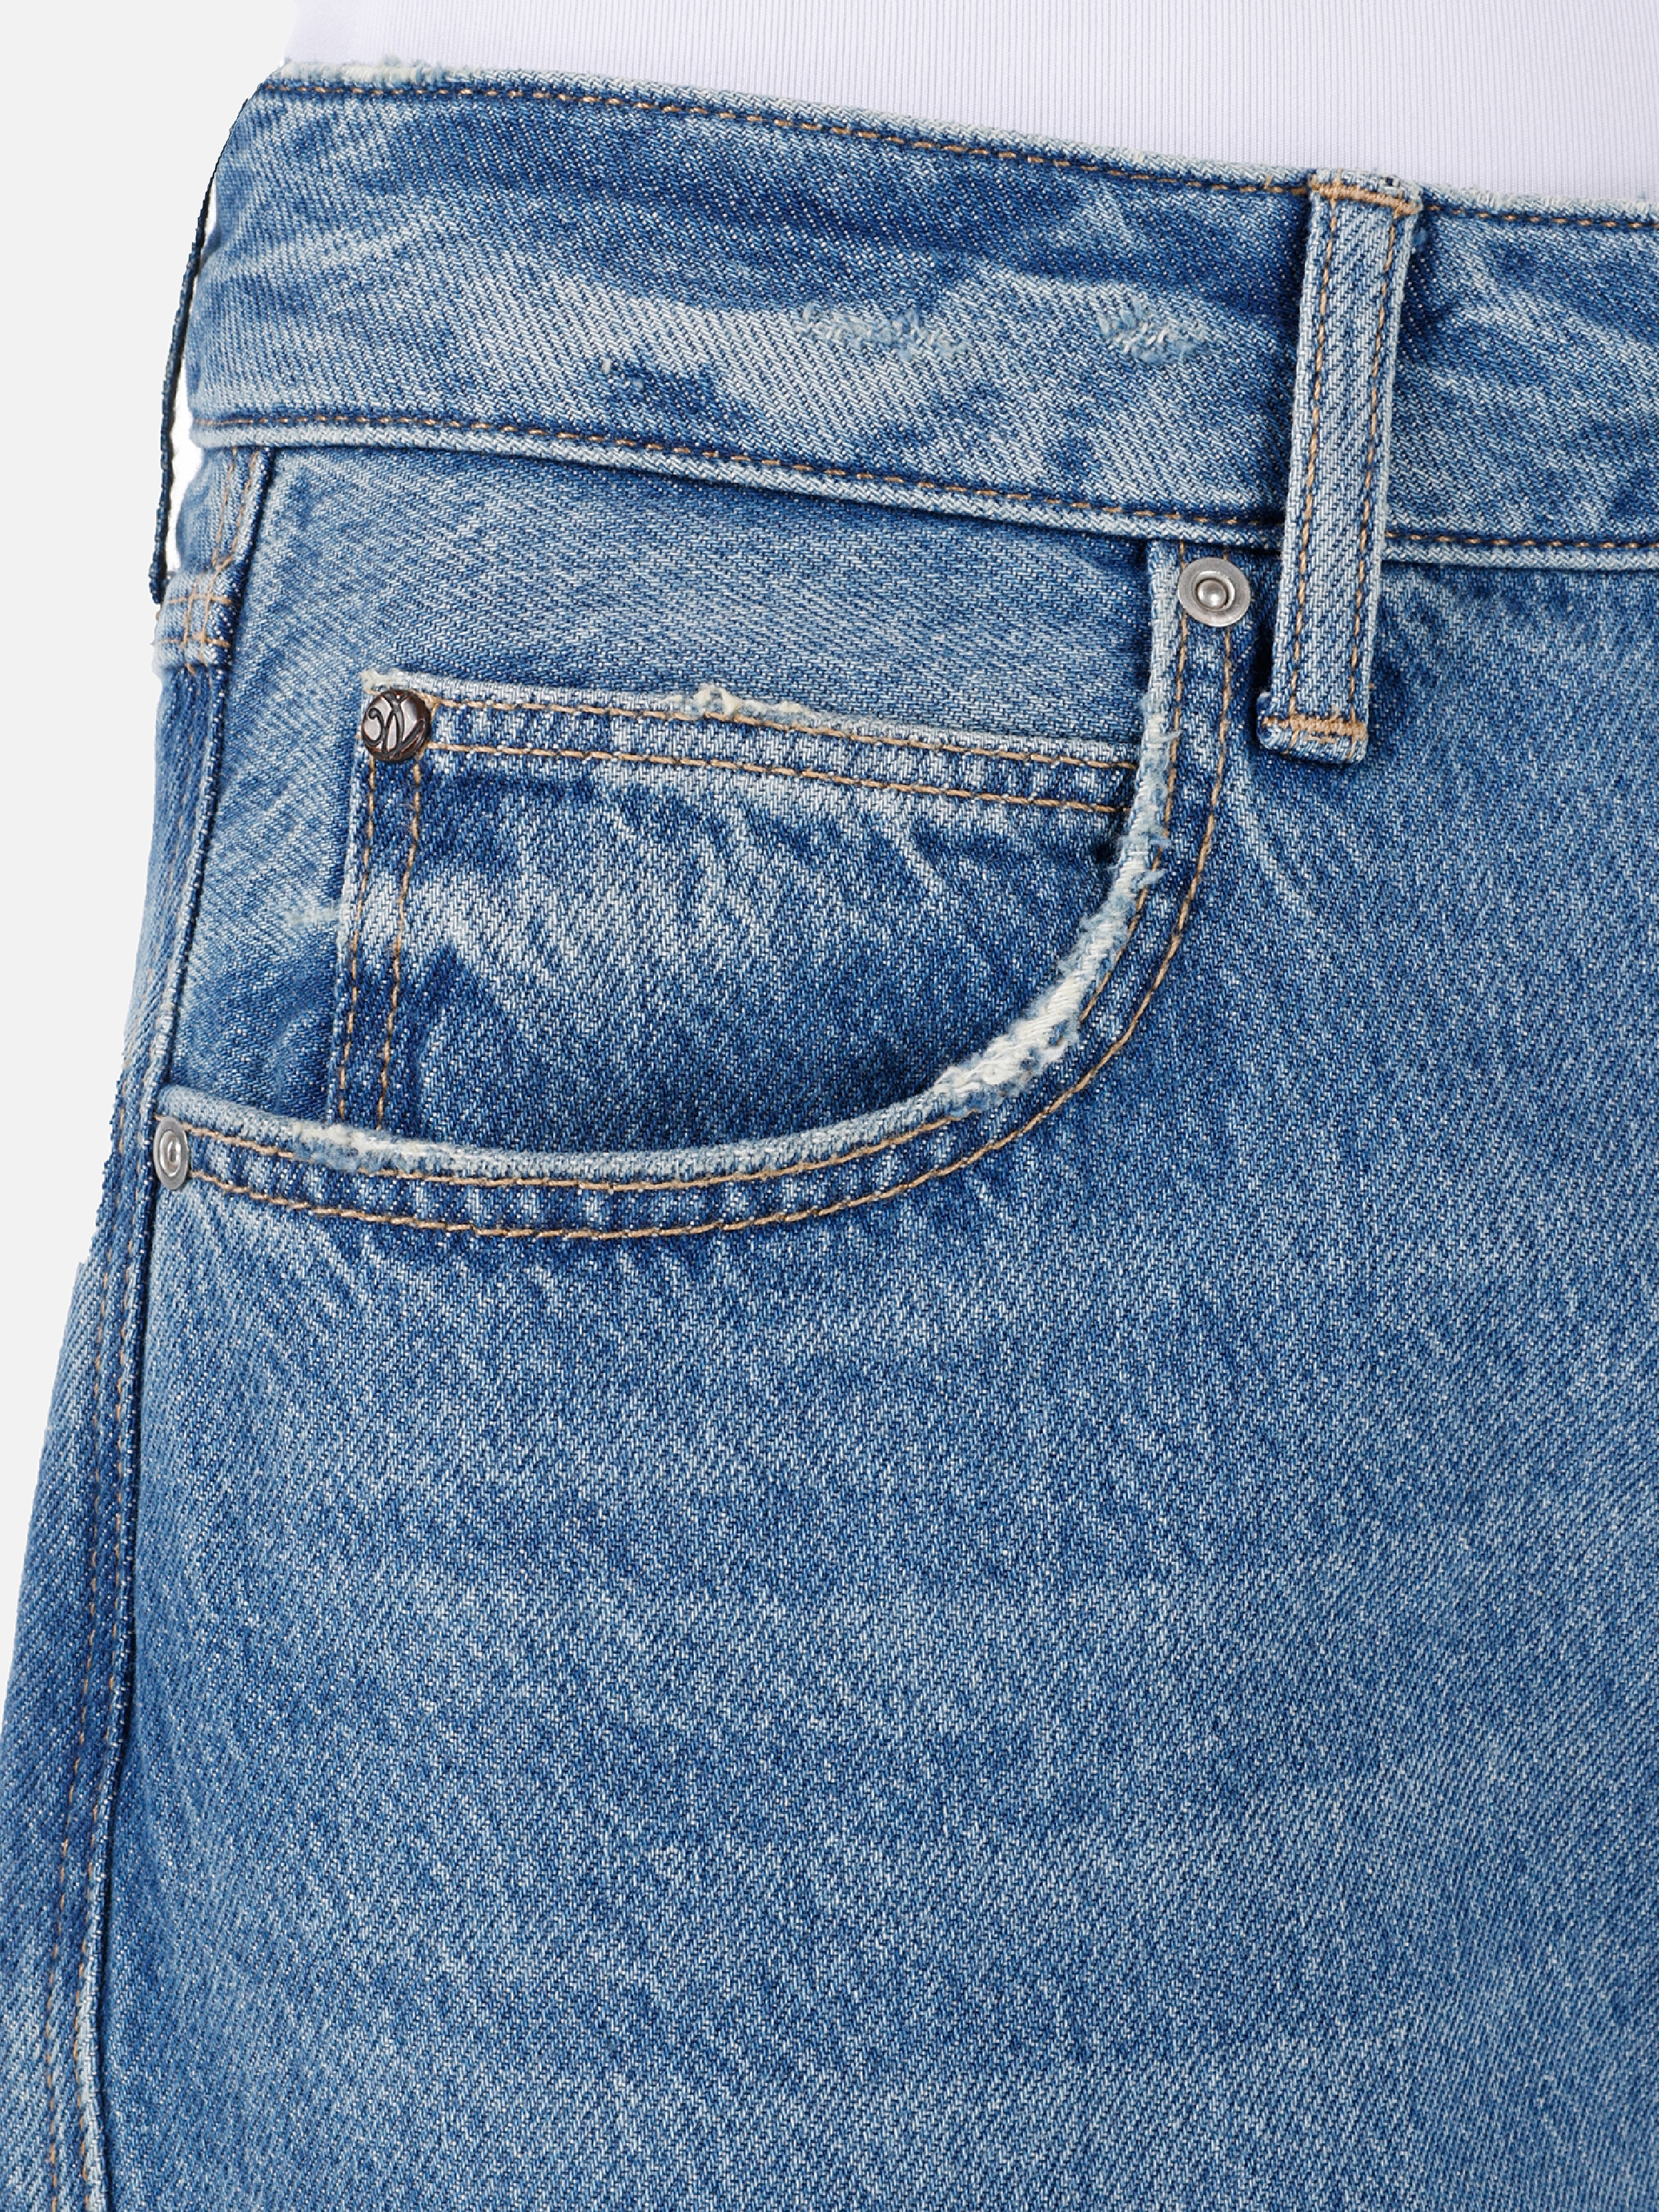 Afișați detalii pentru Pantaloni De Dama Albastru Tapered Fit 